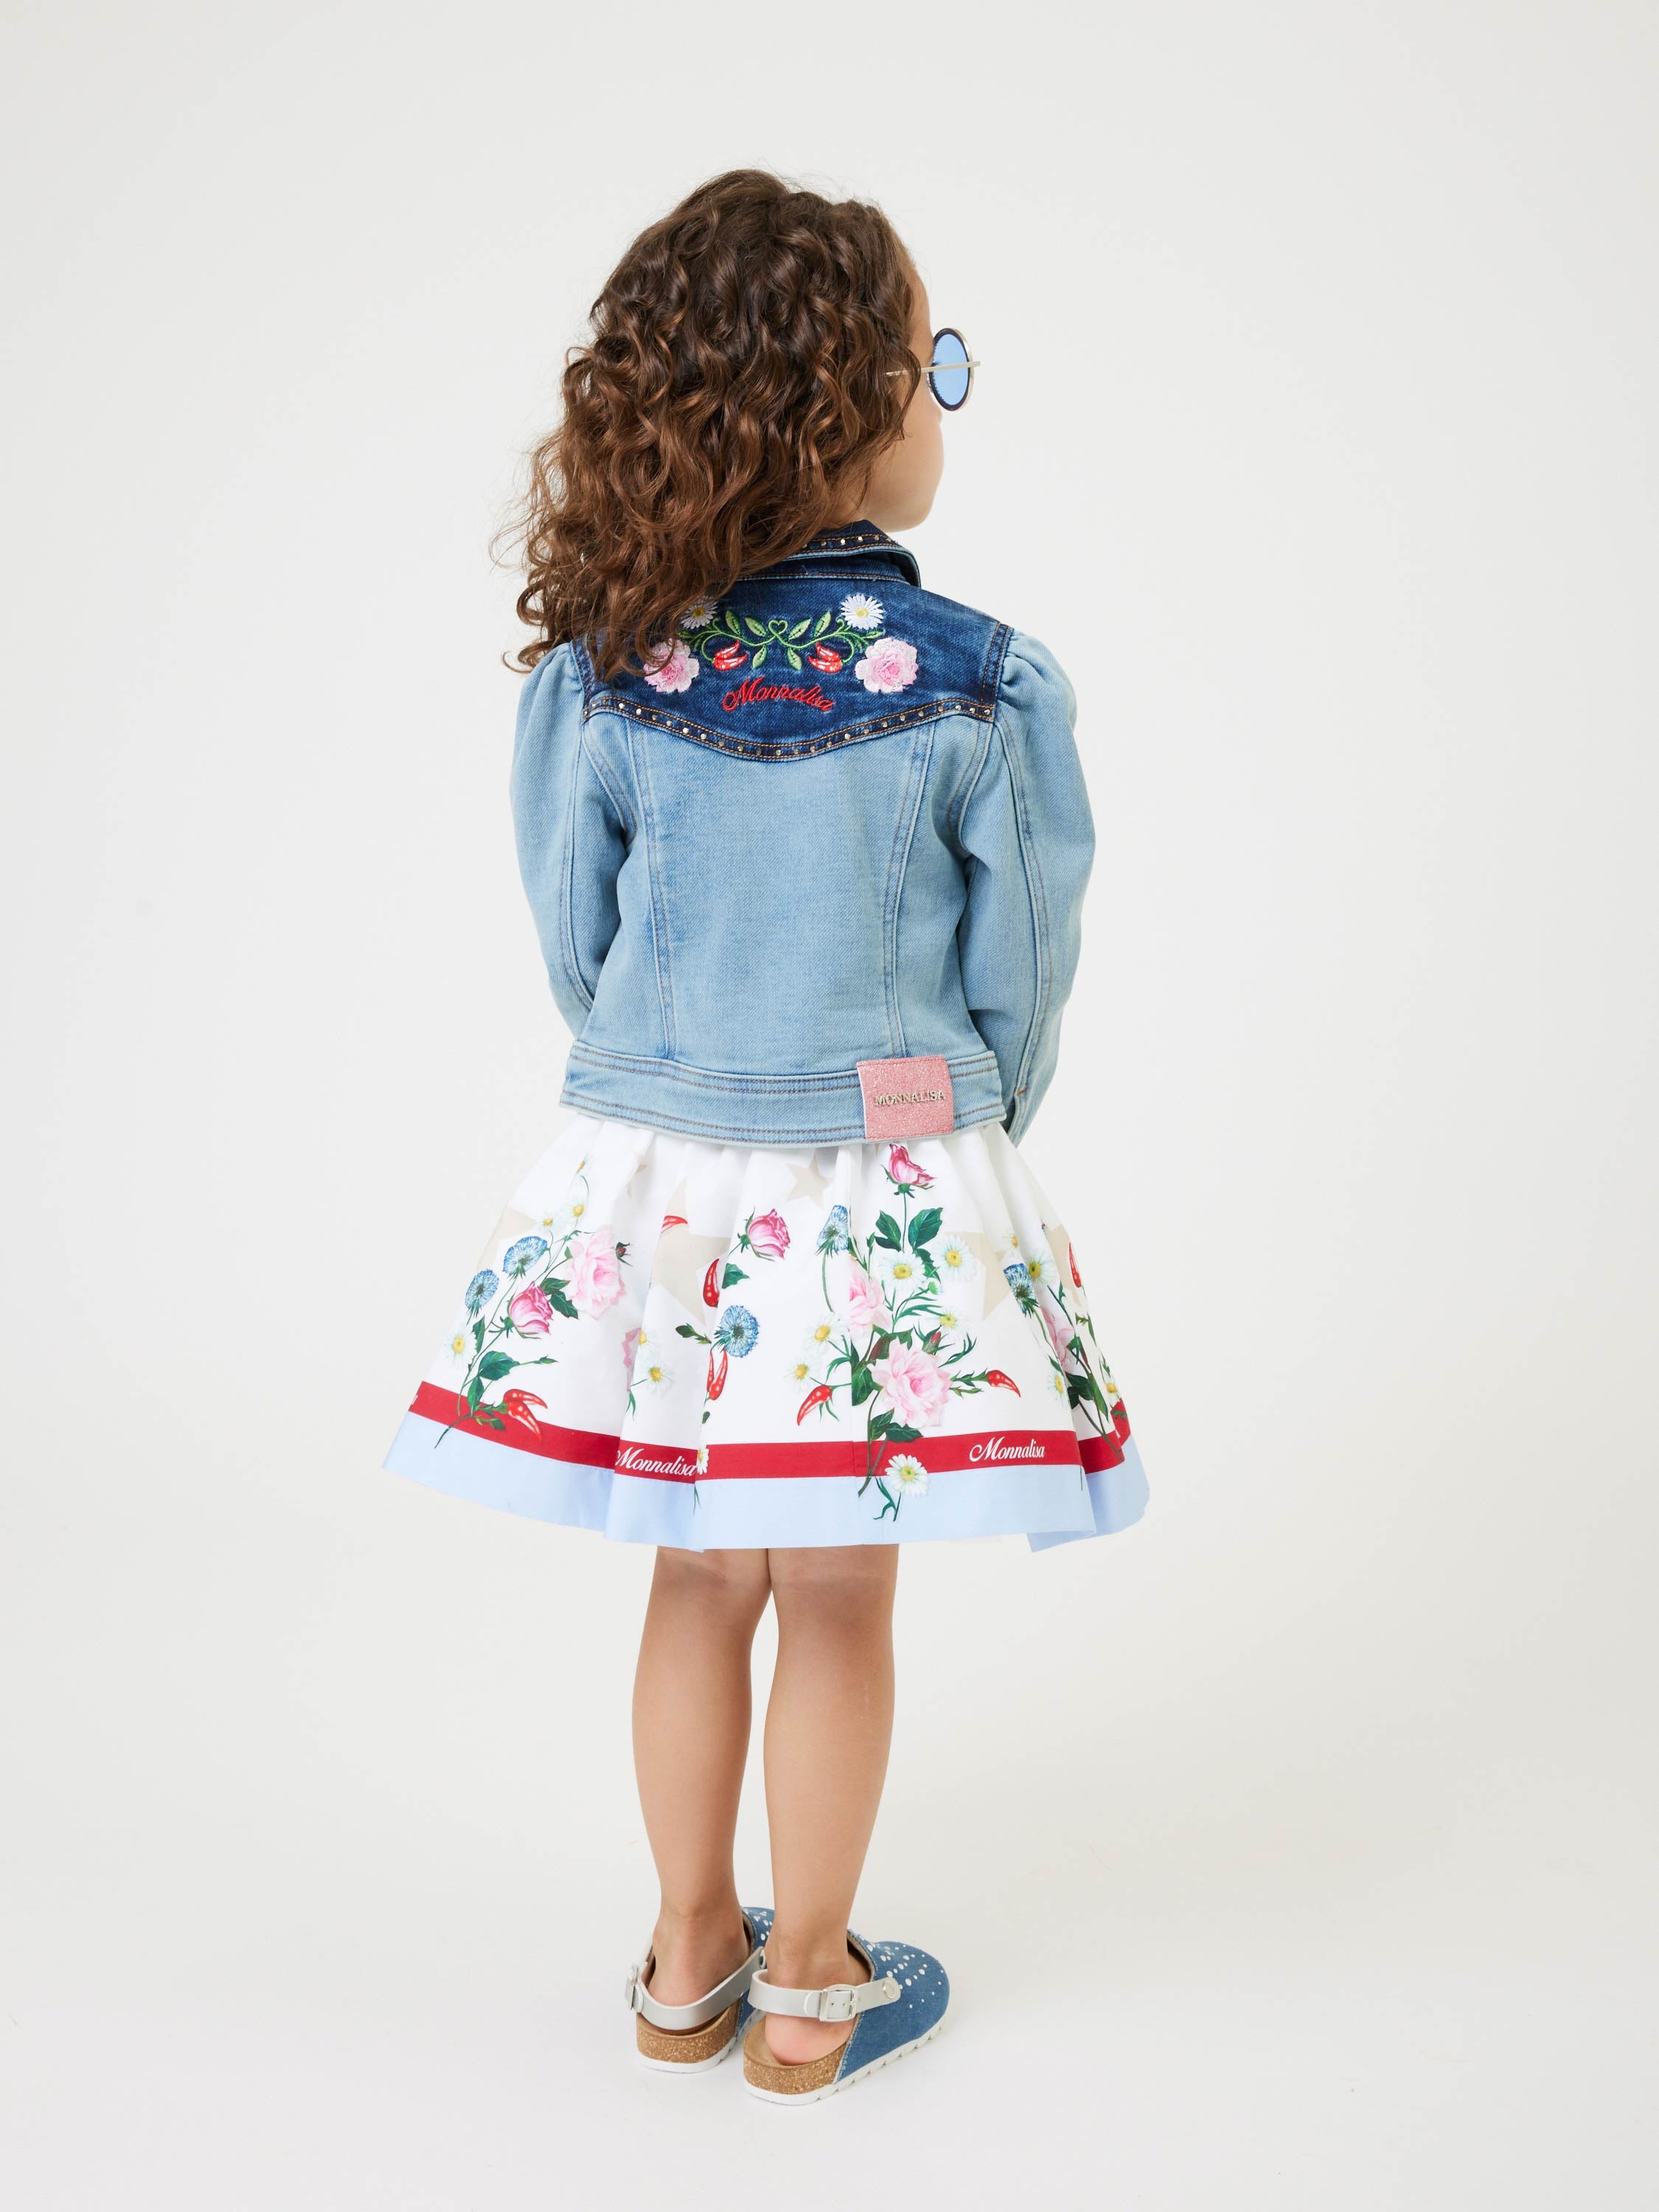 Κοριτσίστικη φούστα με τύπωμα